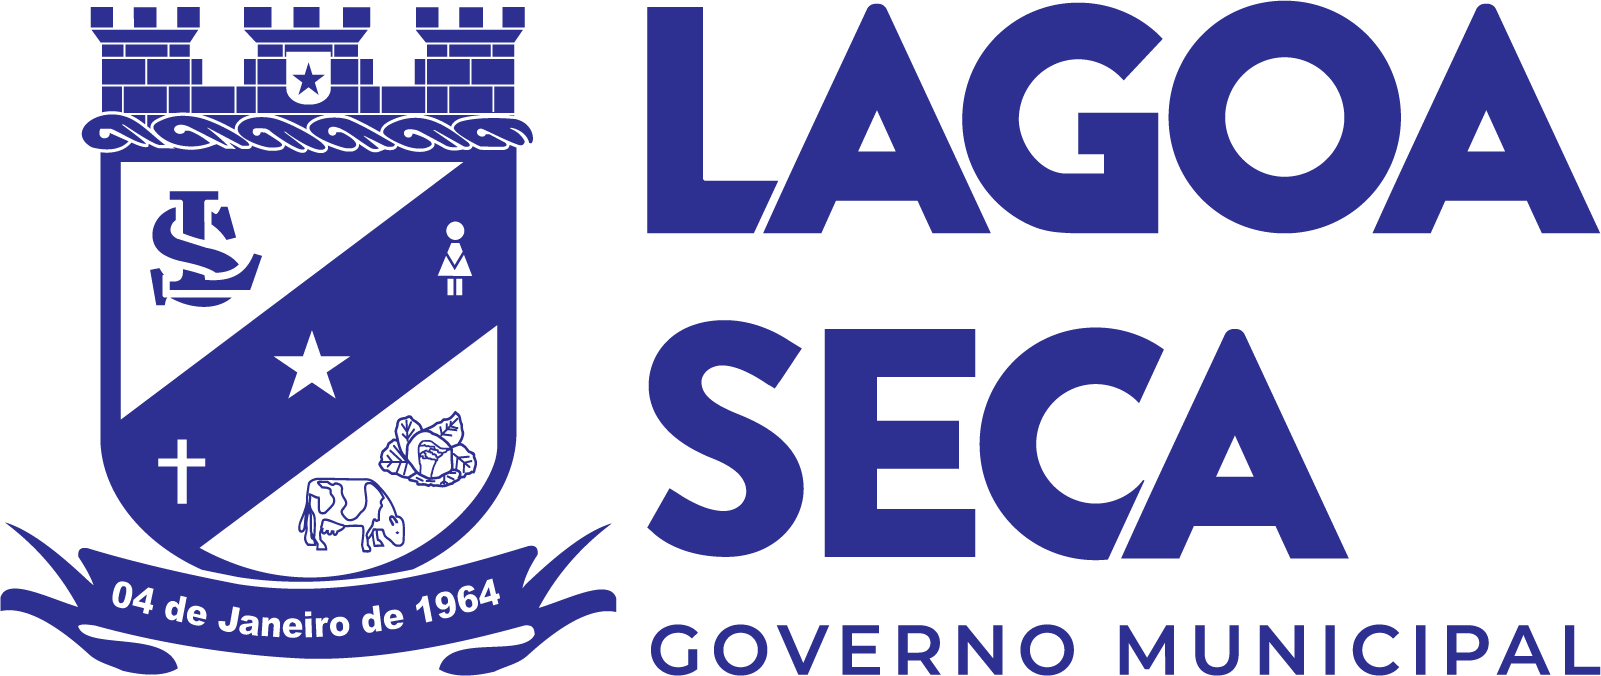 Logotipo Prefeitura de Lagoa Seca